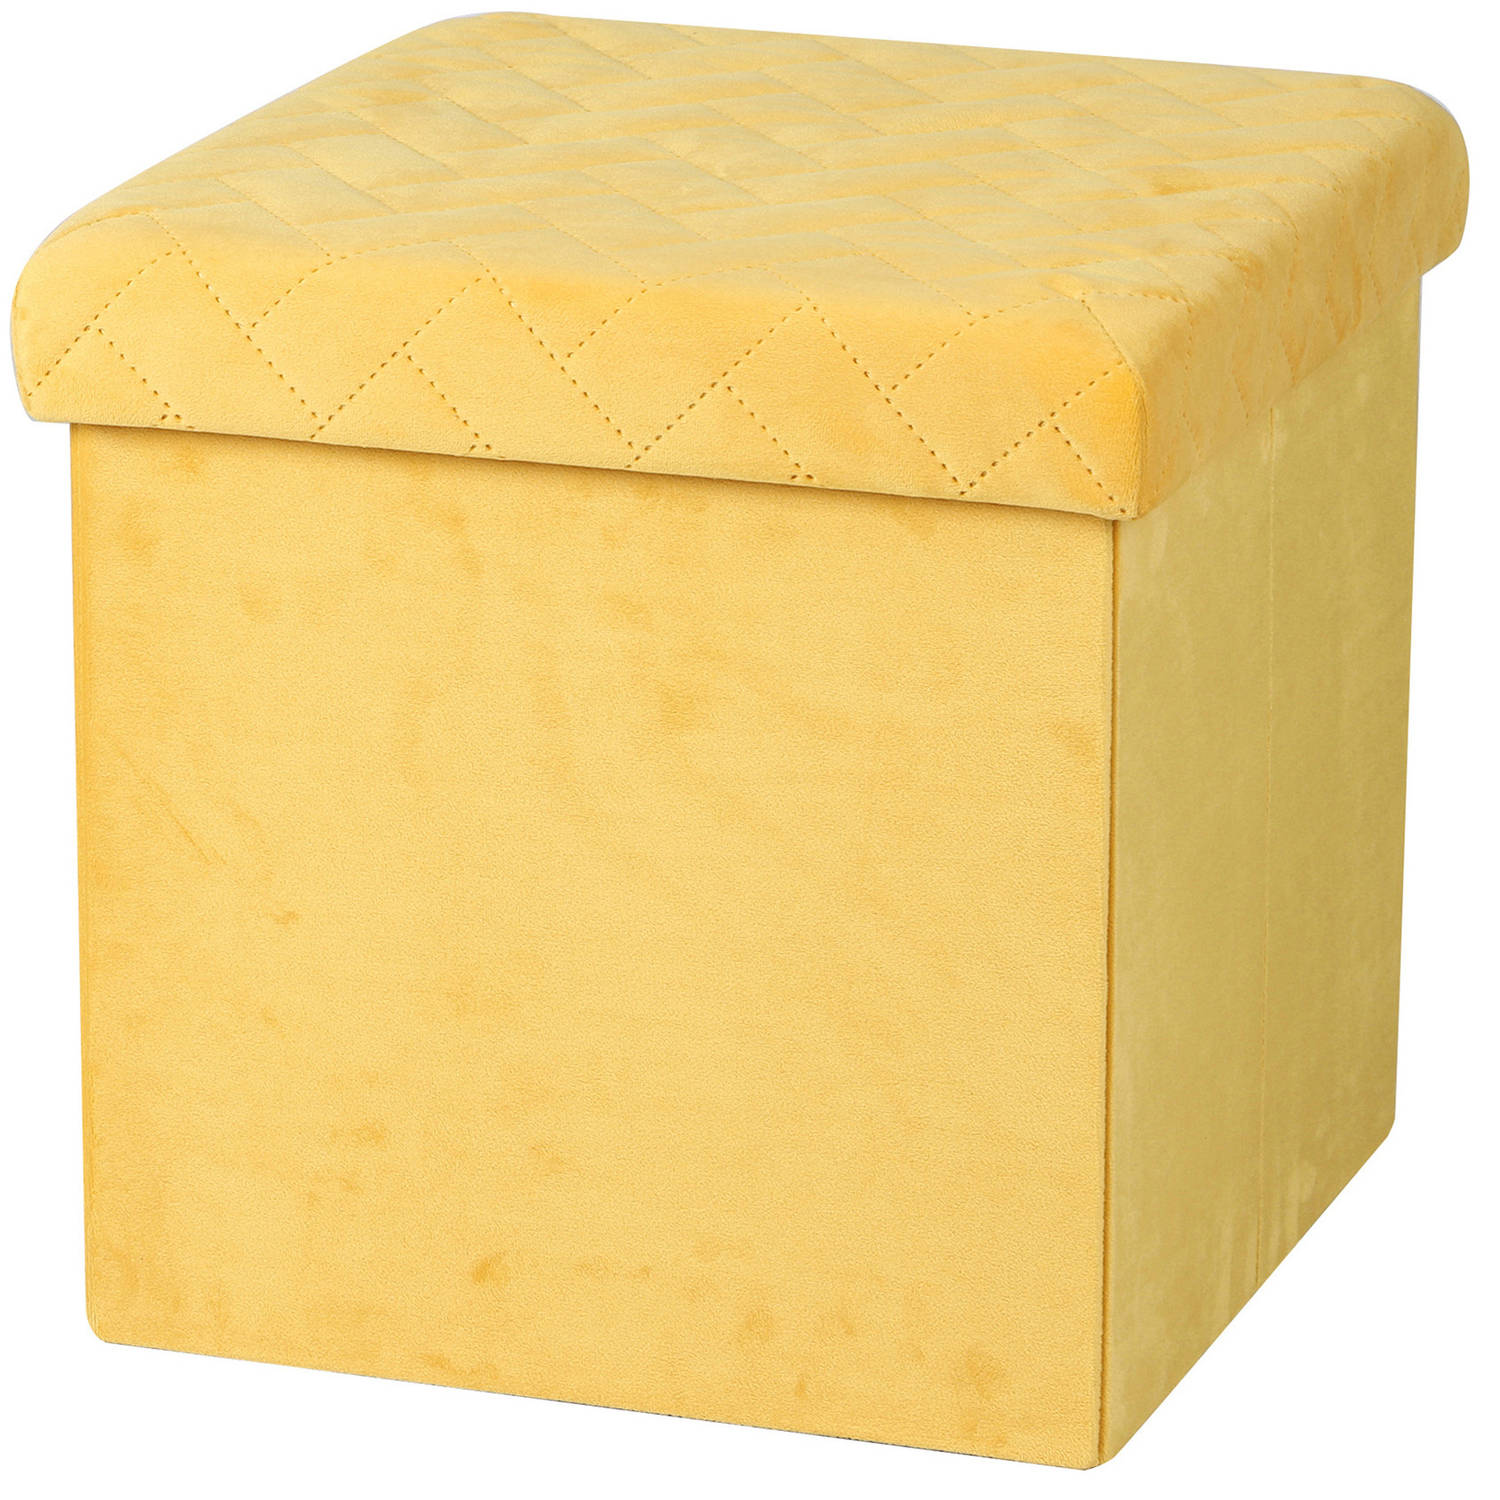 Urban Living Poef/hocker - opbergbox zit krukje - velvet geel - polyester/mdf - 38 x 38 cm - opvouwbaar